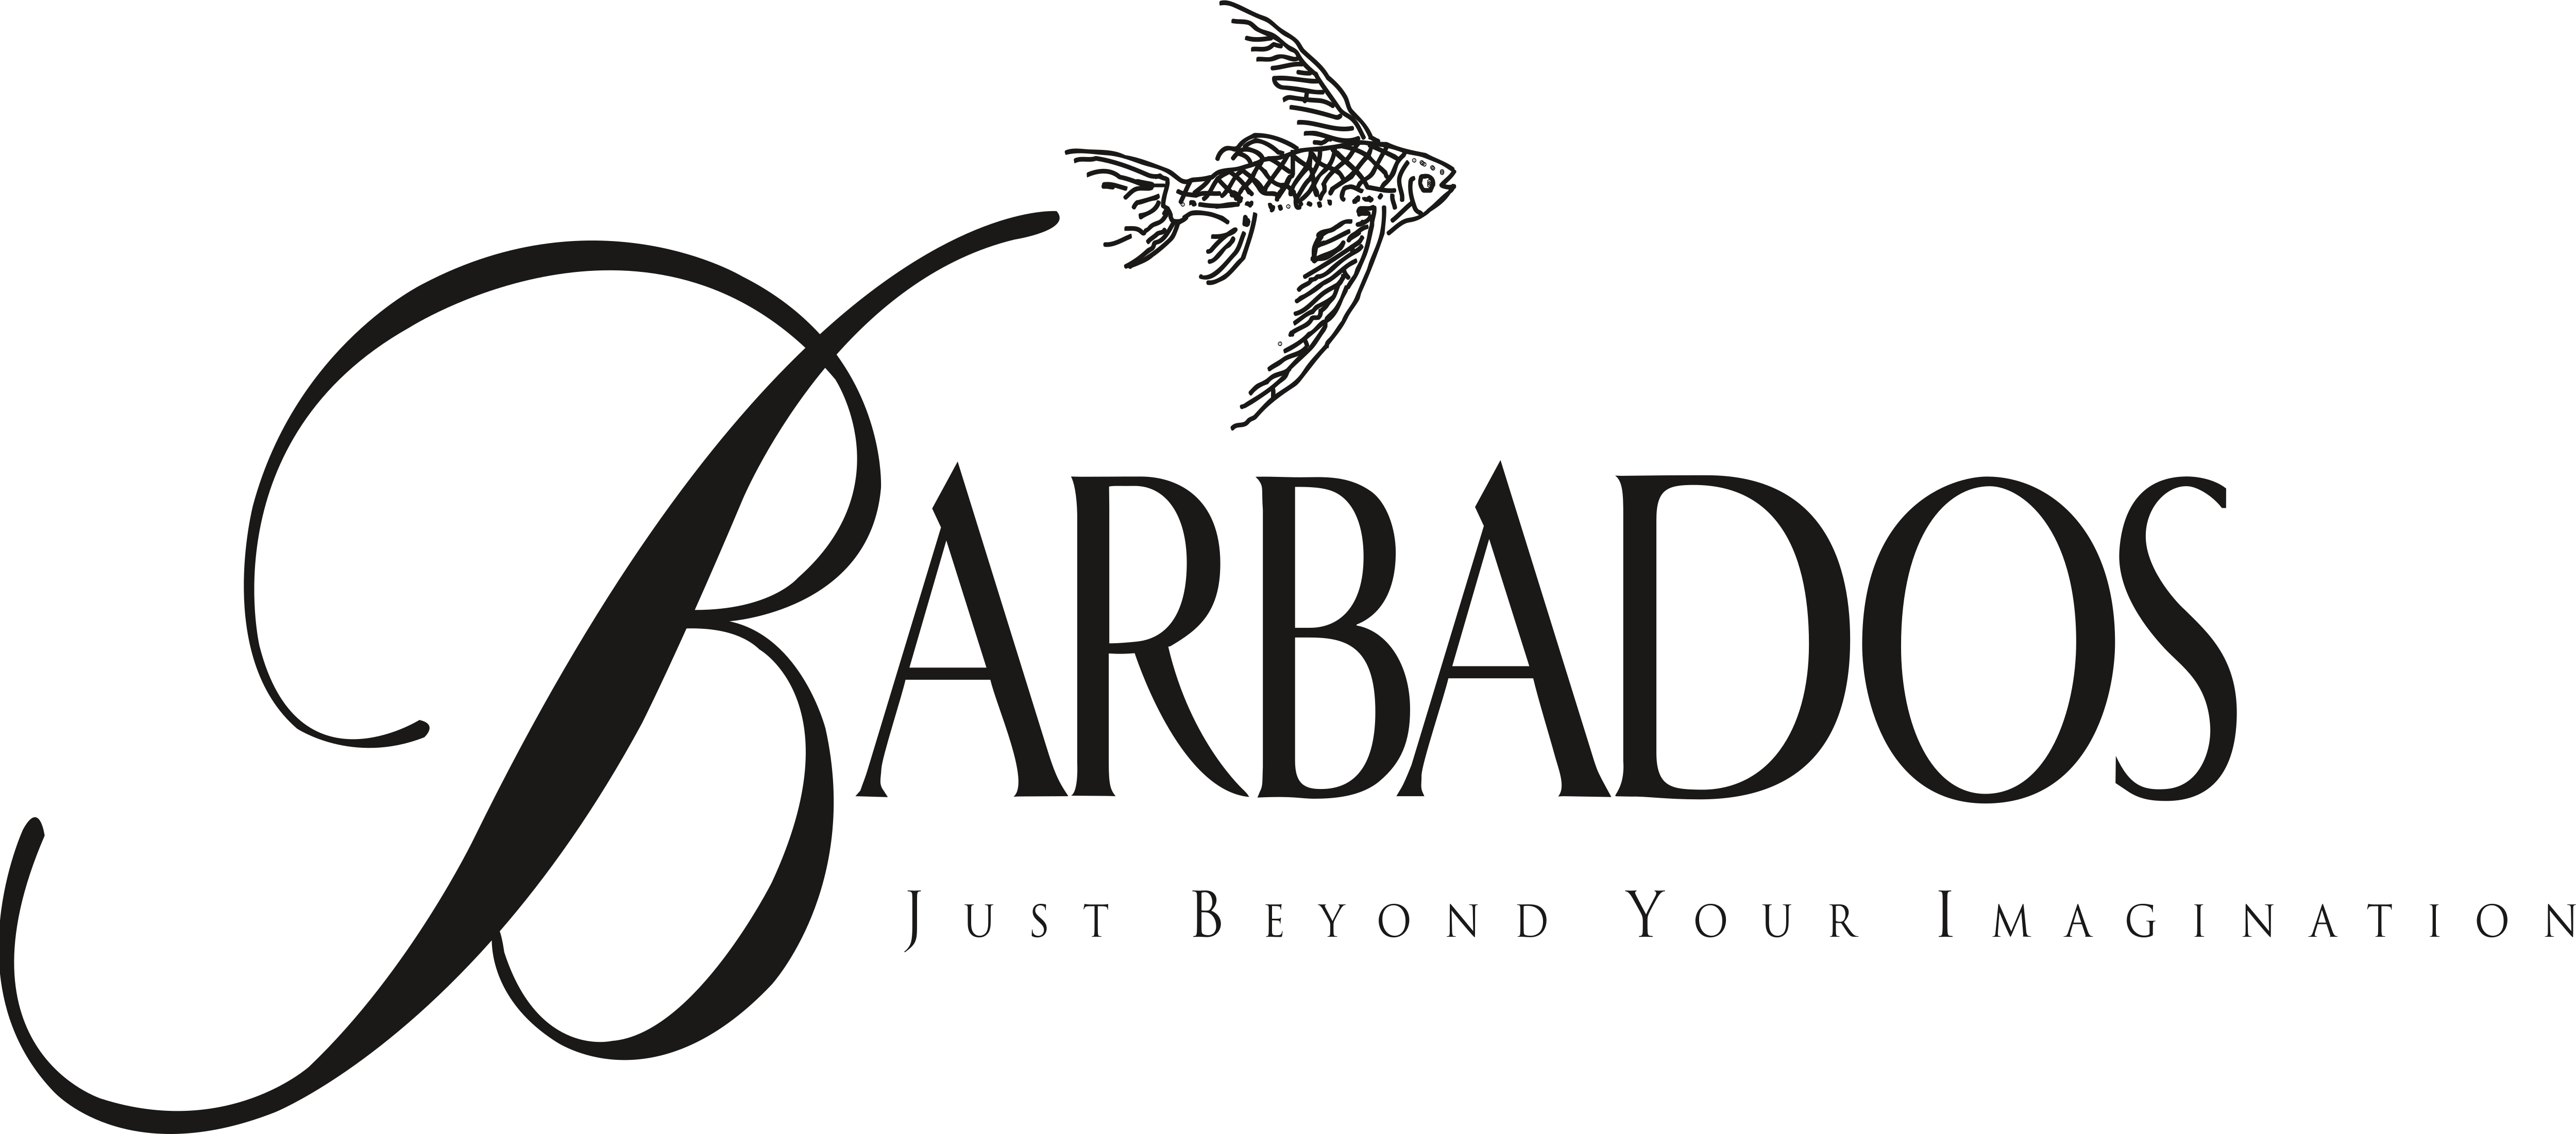 Afbeeldingsresultaat voor barbados logo